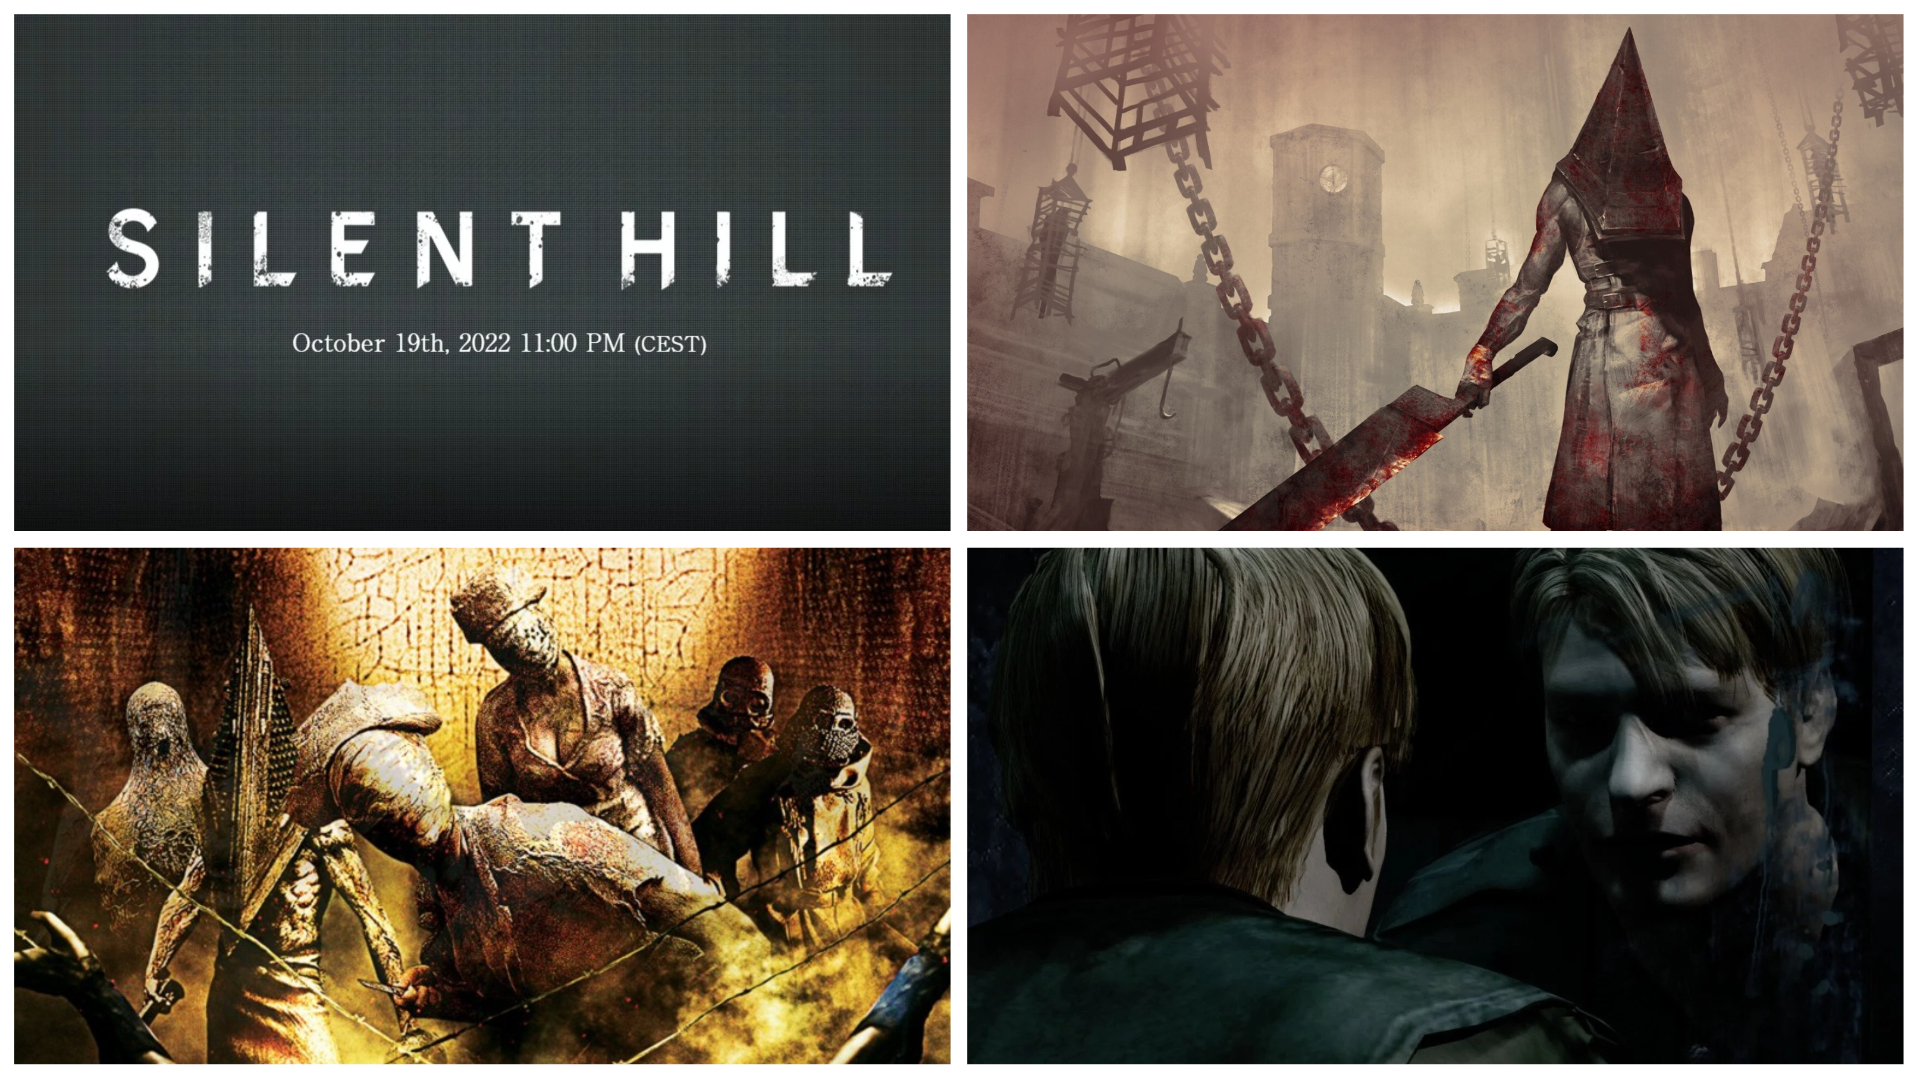 Silent Hill-Livestream: Startzeit, Anschauung und Details